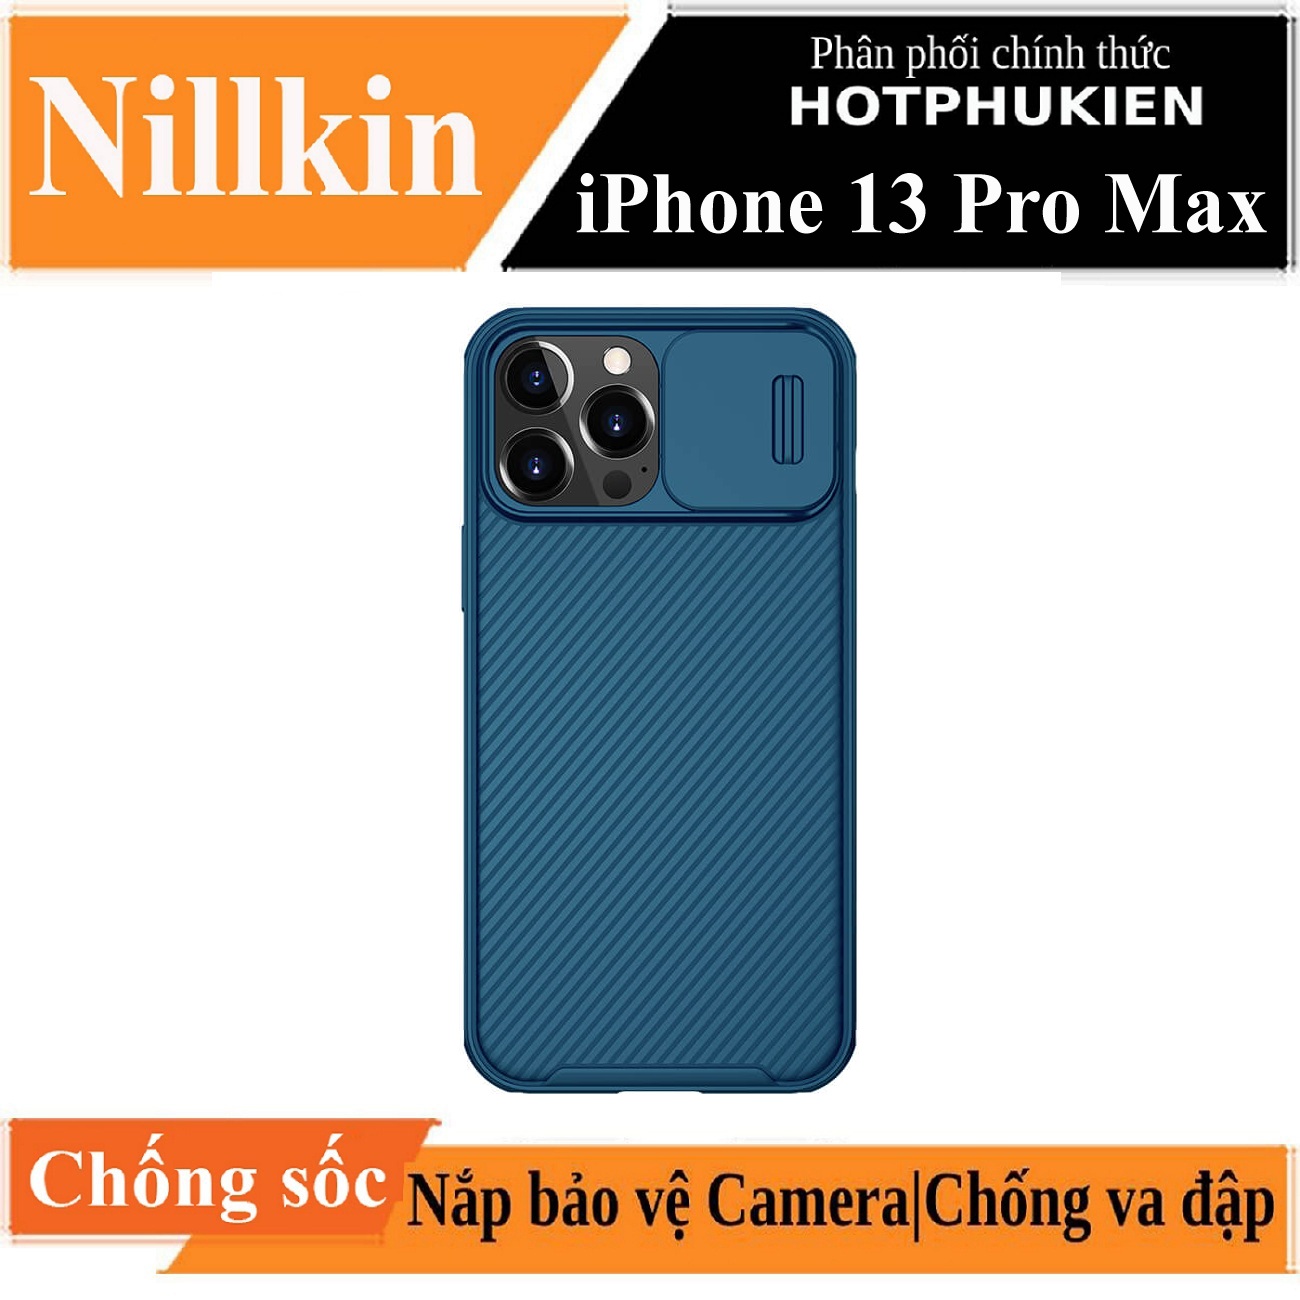 Ốp lưng chống sốc cho iPhone 13 Pro Max bảo vệ Camera hiệu Nillkin Camshield chống sốc cực tốt, chất liệu cao cấp, có khung và nắp đậy bảo vệ Camera - hàng nhập khẩu